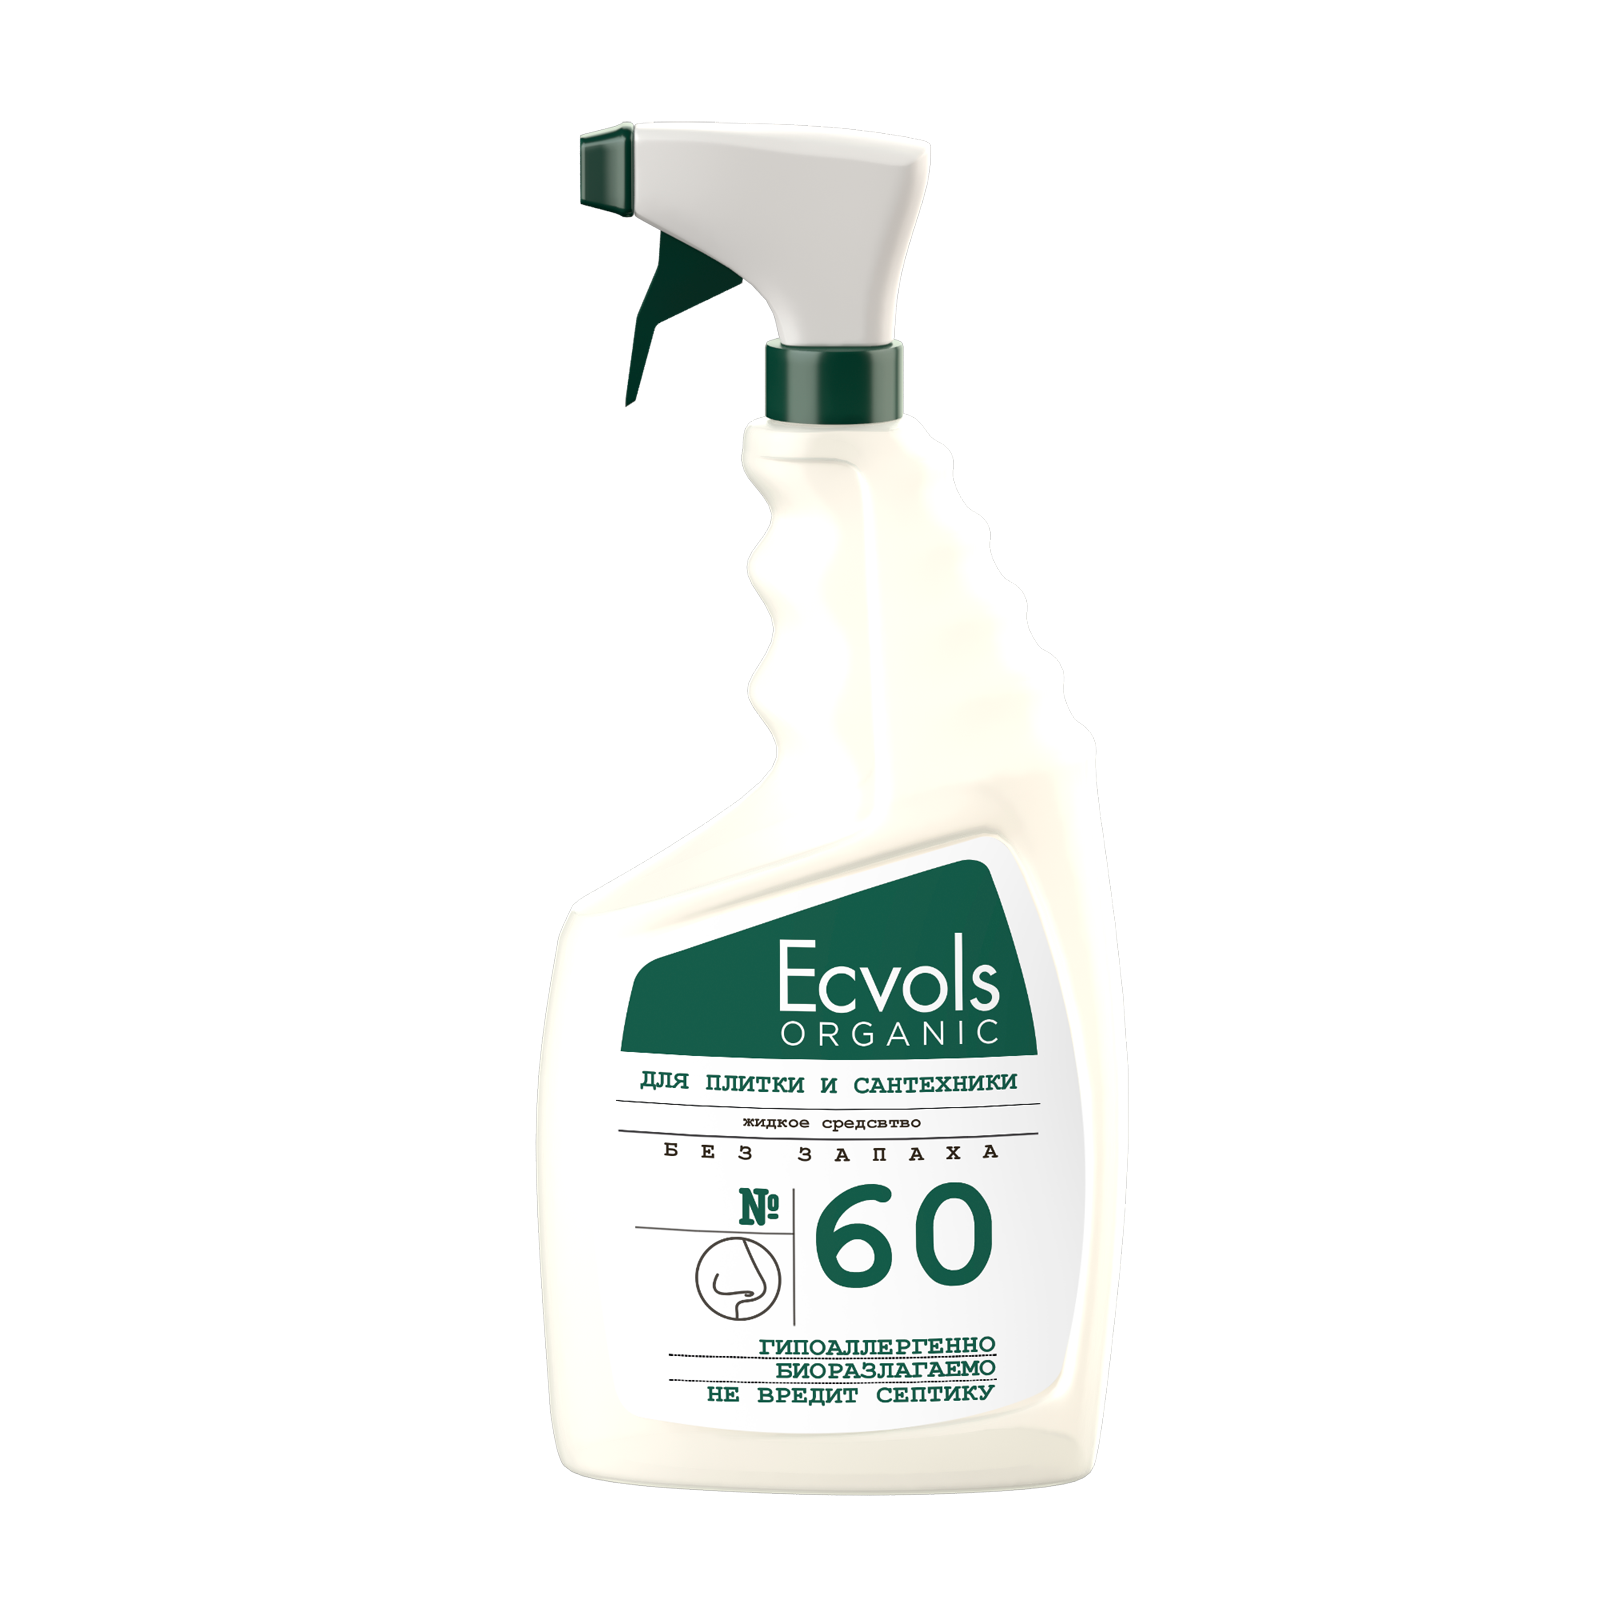 фото Жидкое гипоаллергенное средство для чистки сантехники ecvols №60 без запаха, 750 мл